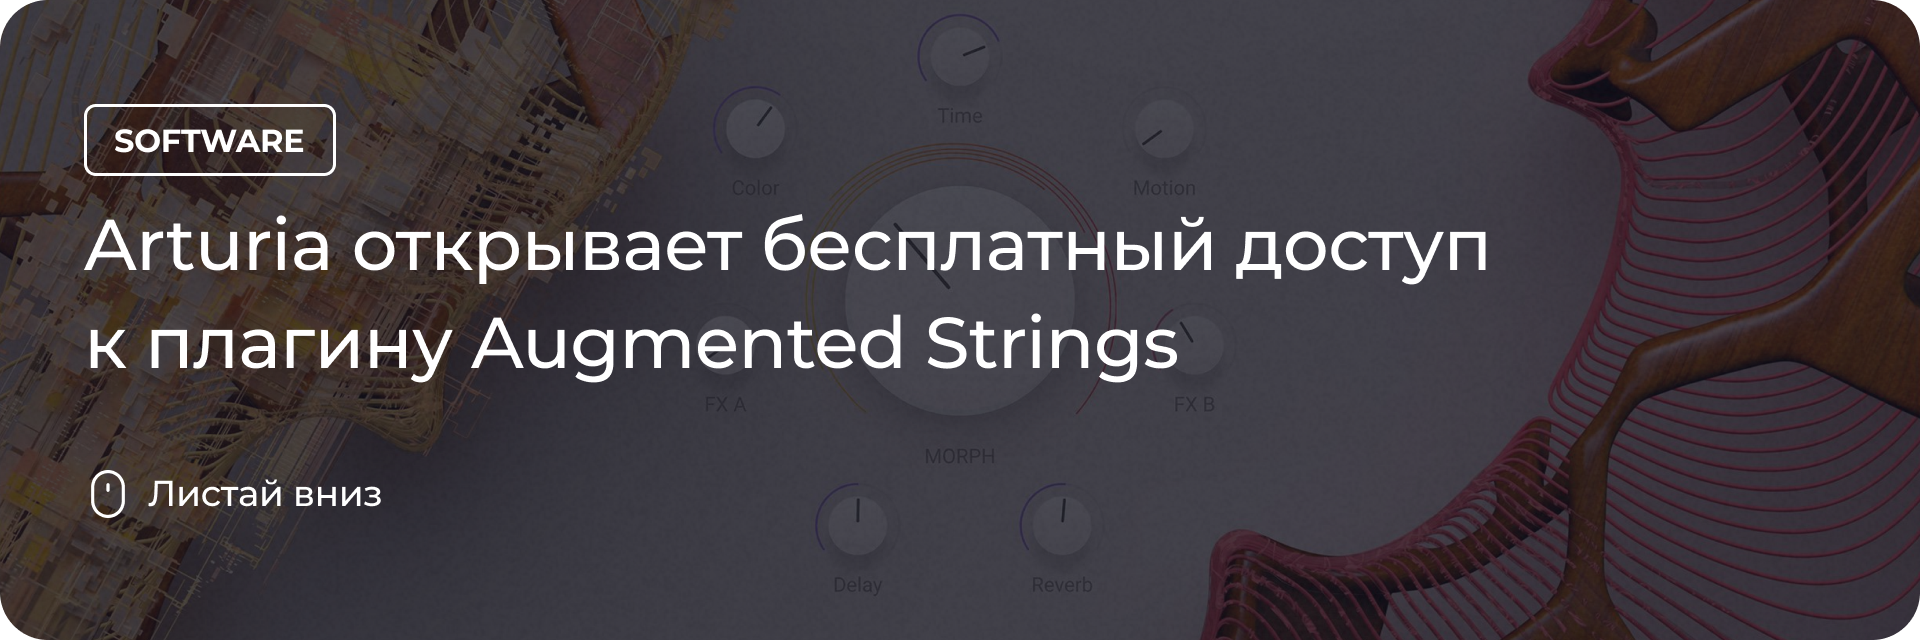 Arturia открывает бесплатный доступ к Augmented Strings